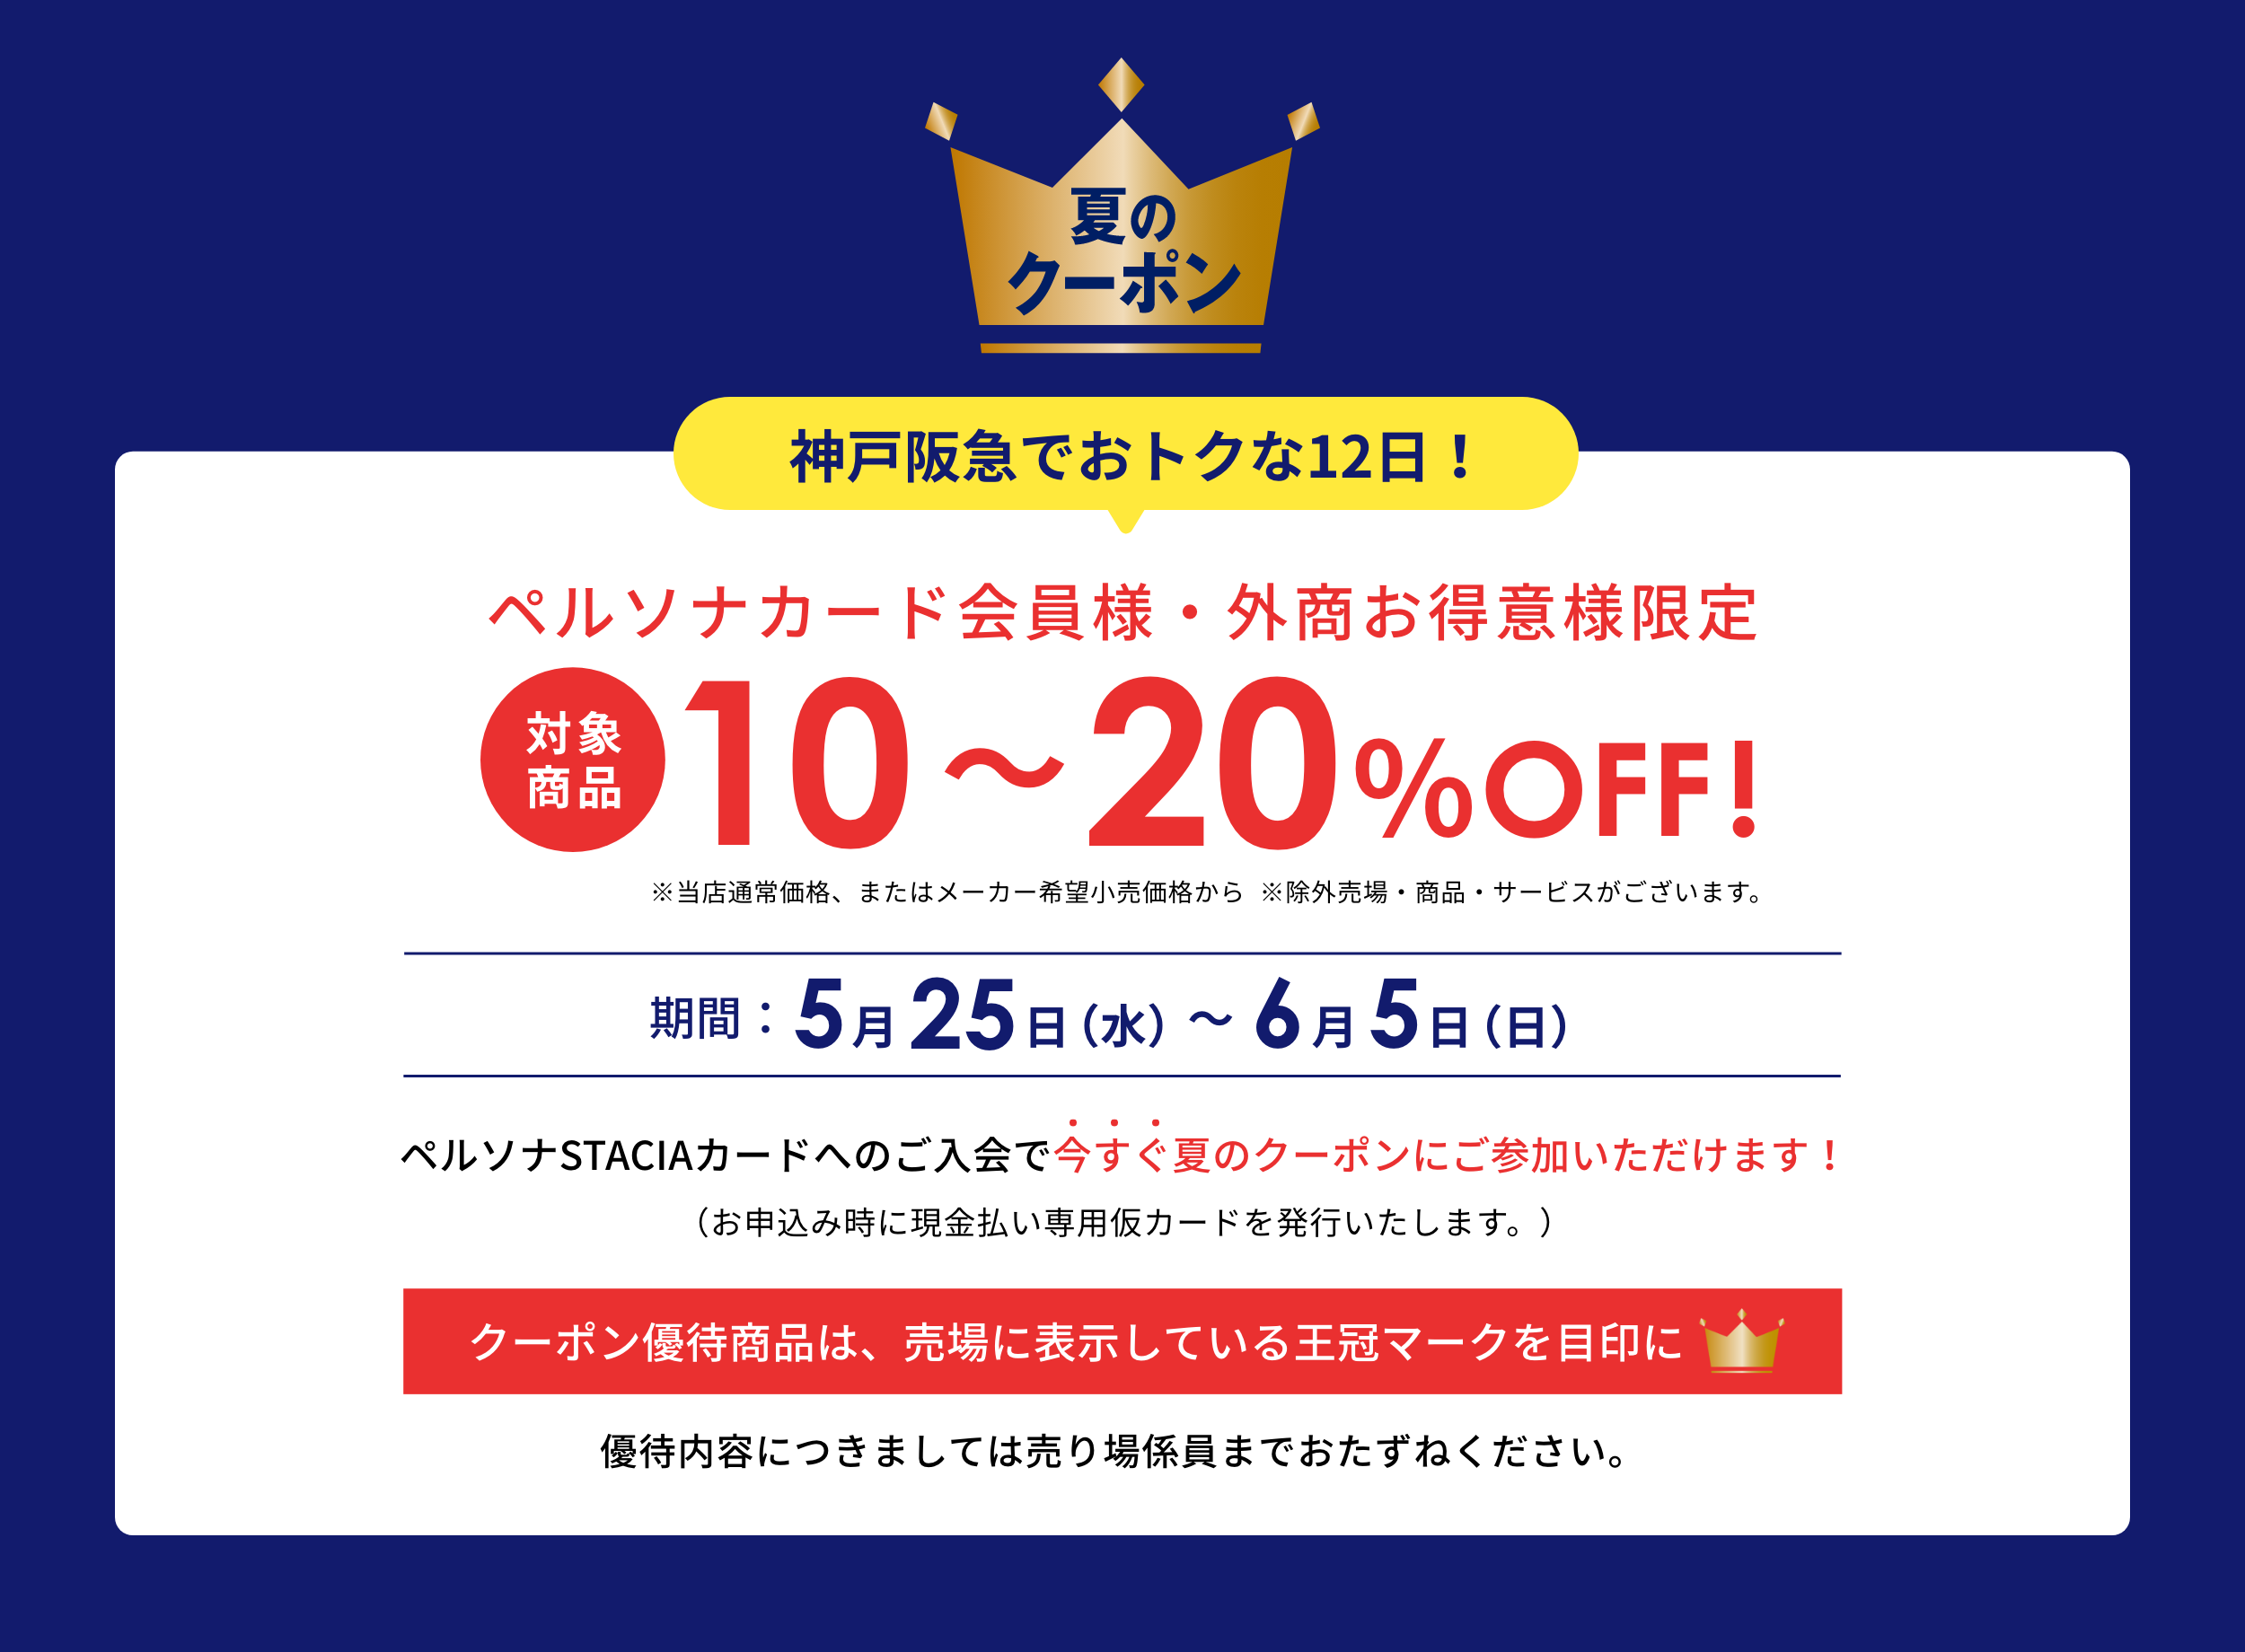 Persona 夏のクーポン 神戸阪急でおトクな12日間！ペルソナカード会員様、外商お得意様限定 対象商品10~20%OFF ※一部割引率の異なる商品・店舗がございます。(当店通常価格またはメーカー希望小売価格から)神戸阪急：5月25日（水）〜6月5日（日）※諸般の事情によりキャンペーンの中止や期間が変更となる場合がございます。ペルソナSTACIAカードへのご入会で今すぐ夏のクーポンにご参加いただけます！（お申込み時に現金払い専用仮カードを発行いたします。）